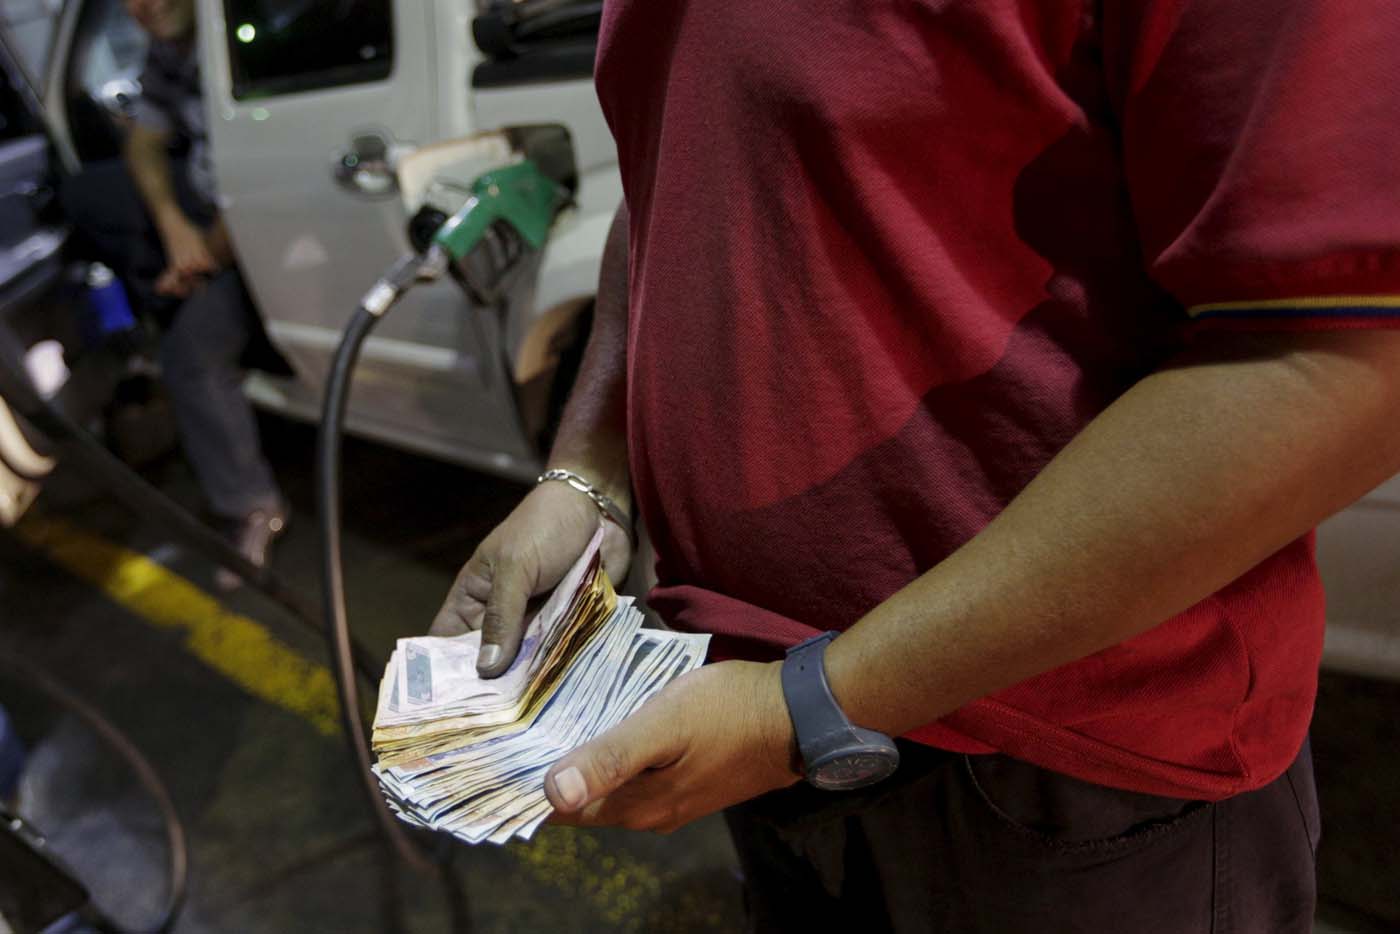 Cobran dinero extra para echar gasolina en estaciones de servicio de Barquisimeto